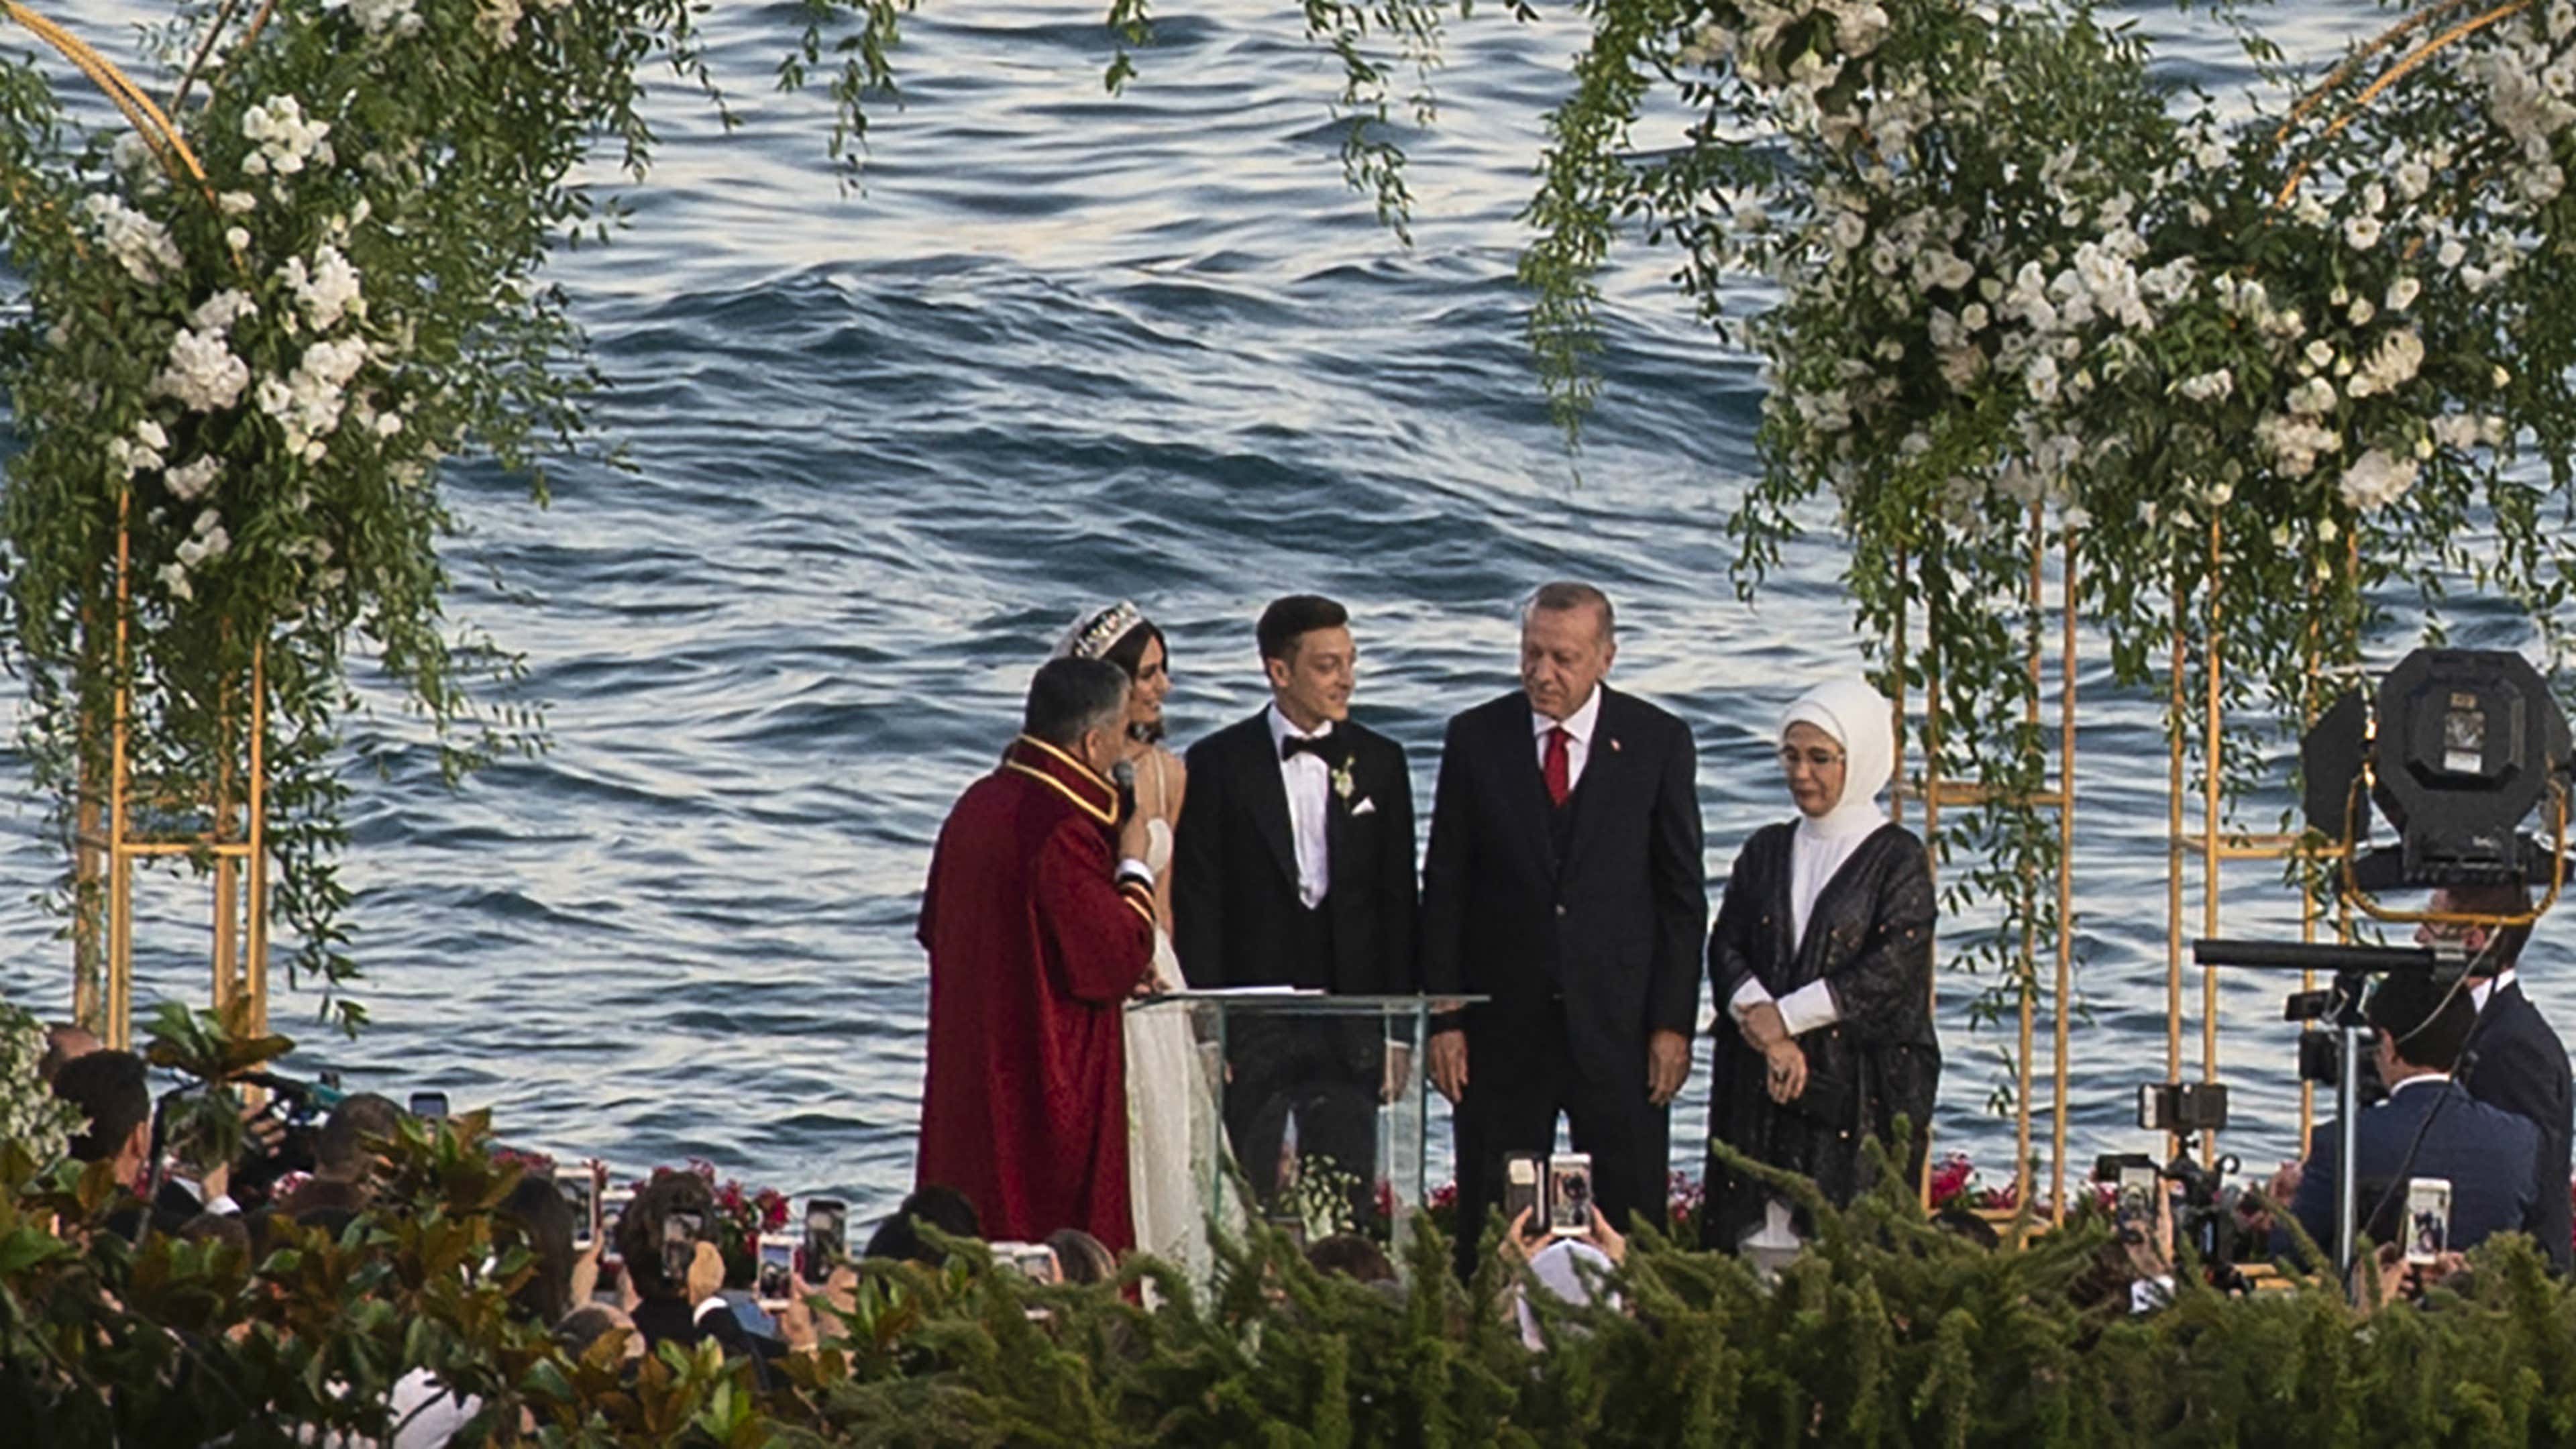 Mesut Ozil Amine Gulse Recep Tayyip Erdogan wedding